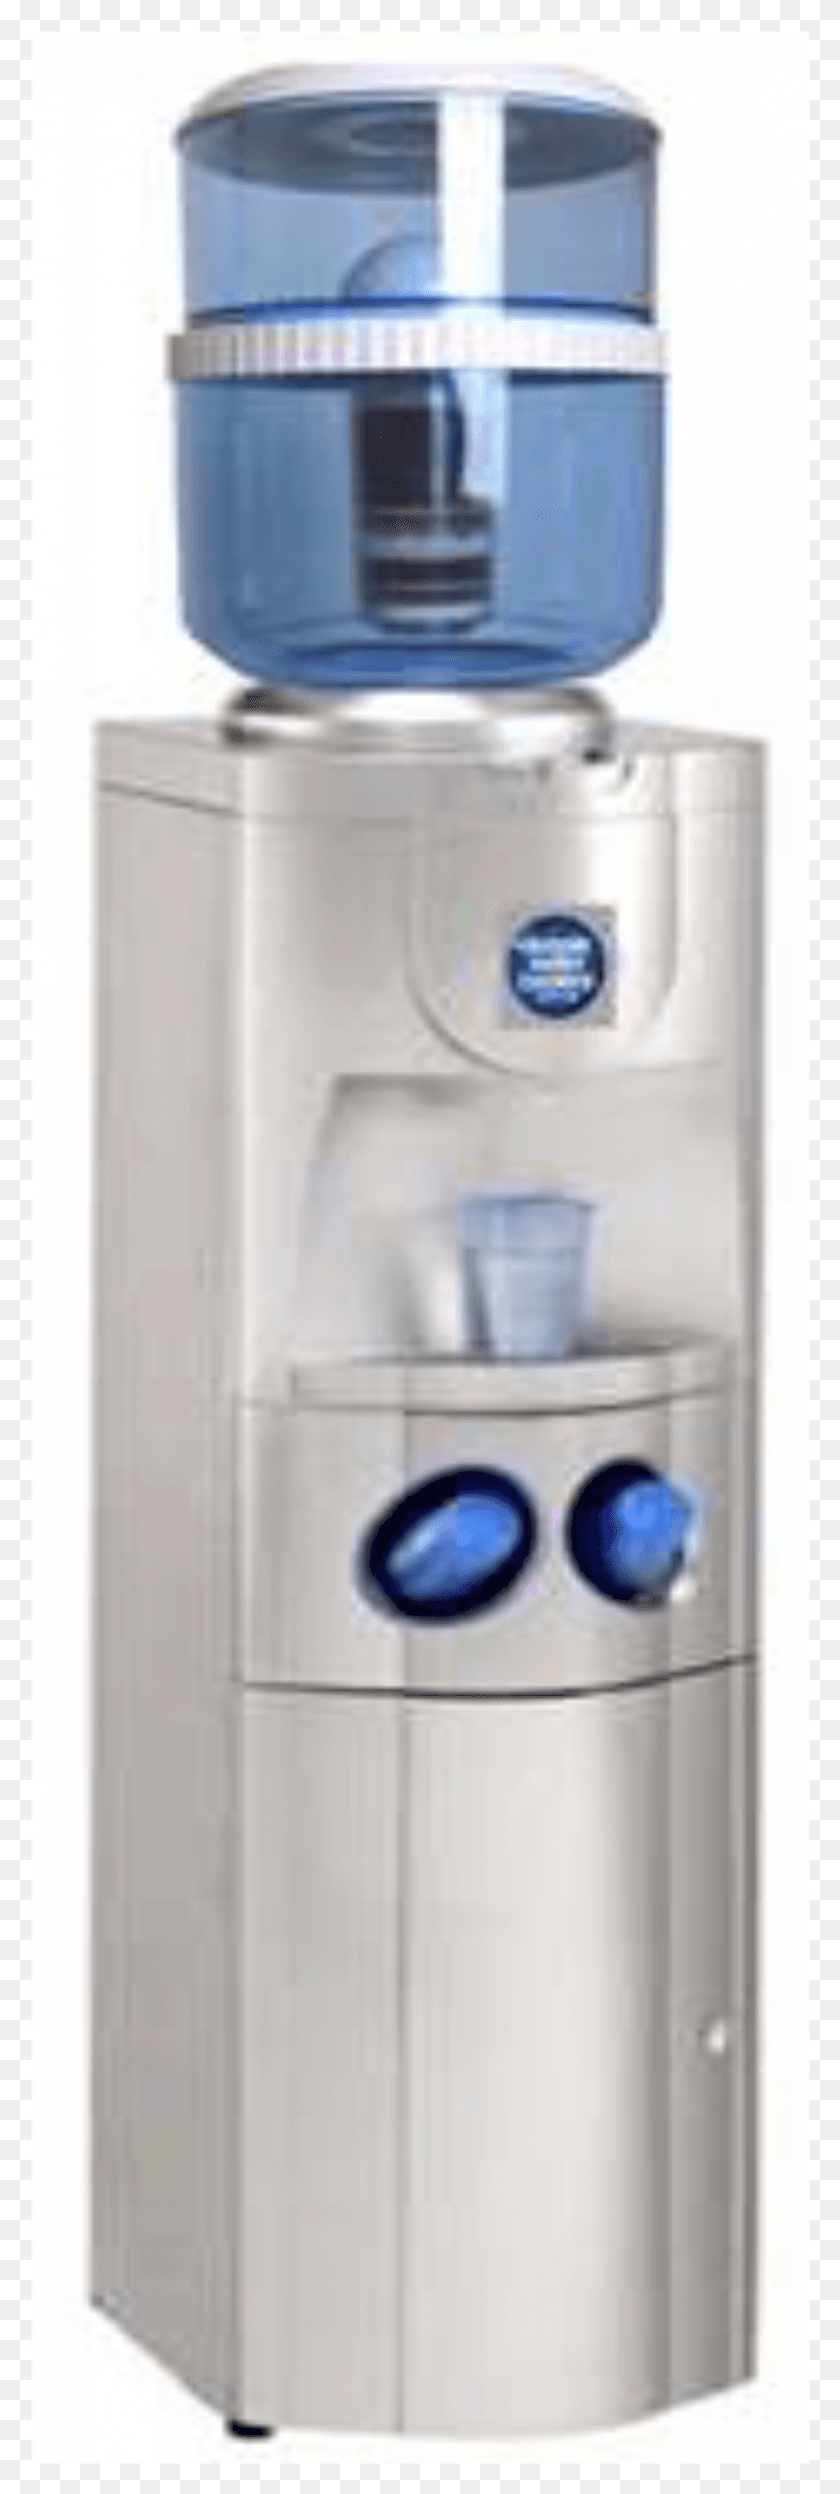 787x2456 Wix 2016 Alpha Fs Botella De Agua, Enfriador, Electrodomésticos, Refrigerador Hd Png